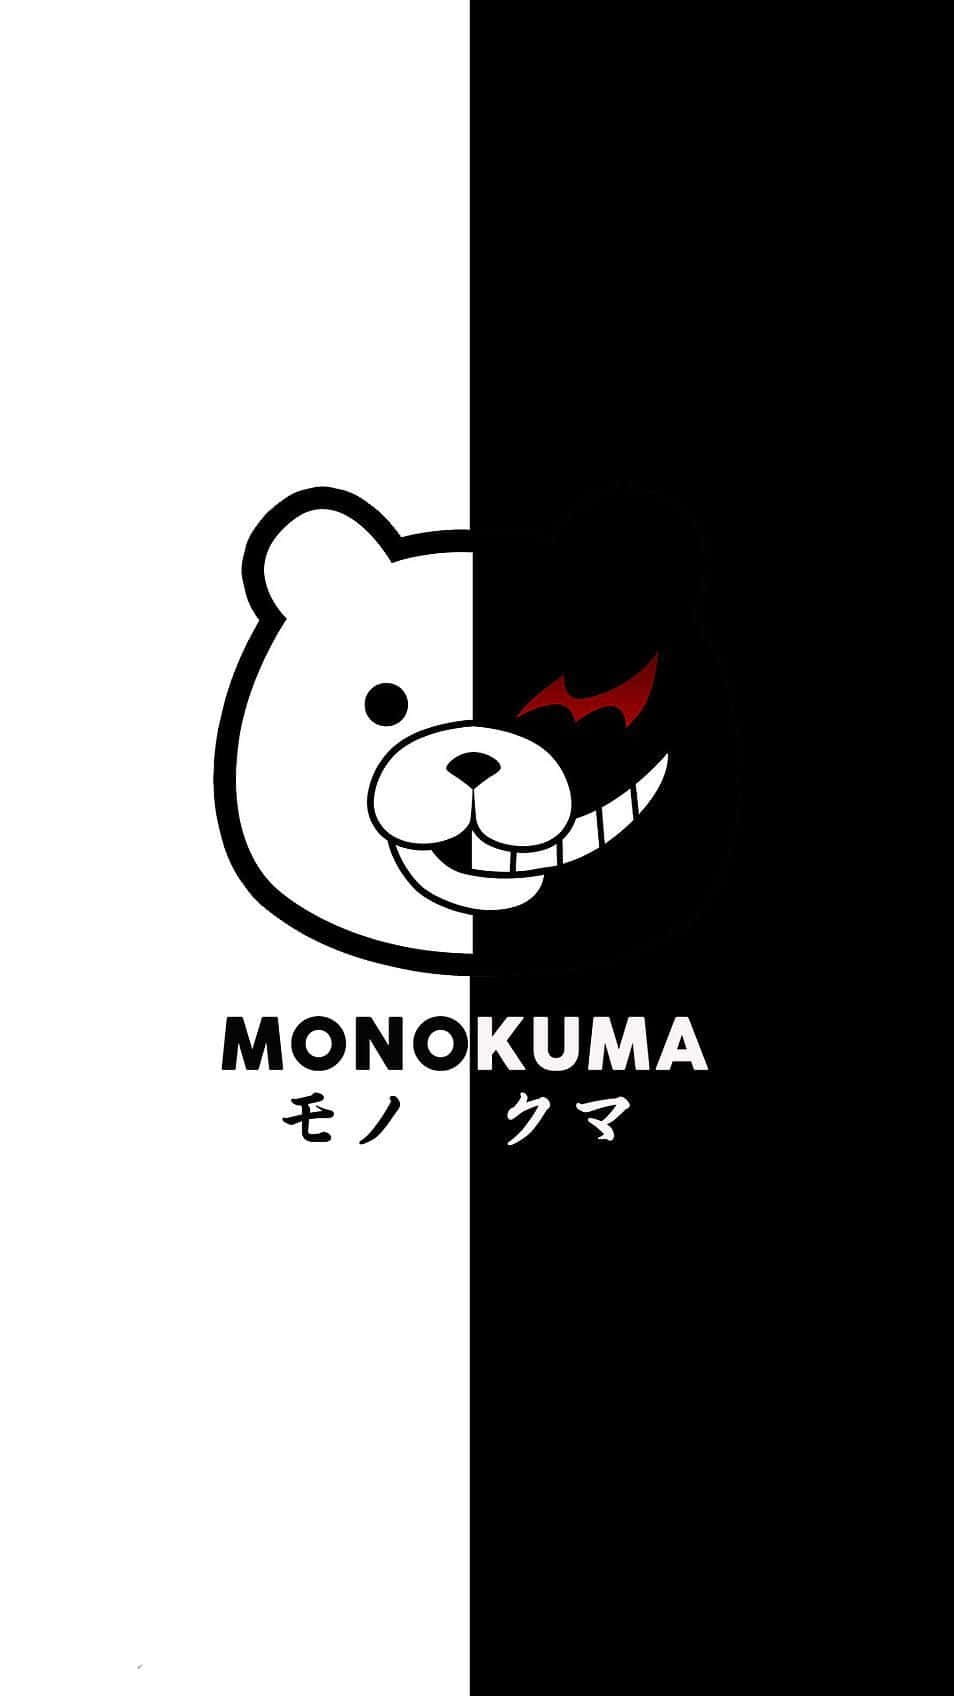 Monokuma Hope's Peak Academy Headmaster